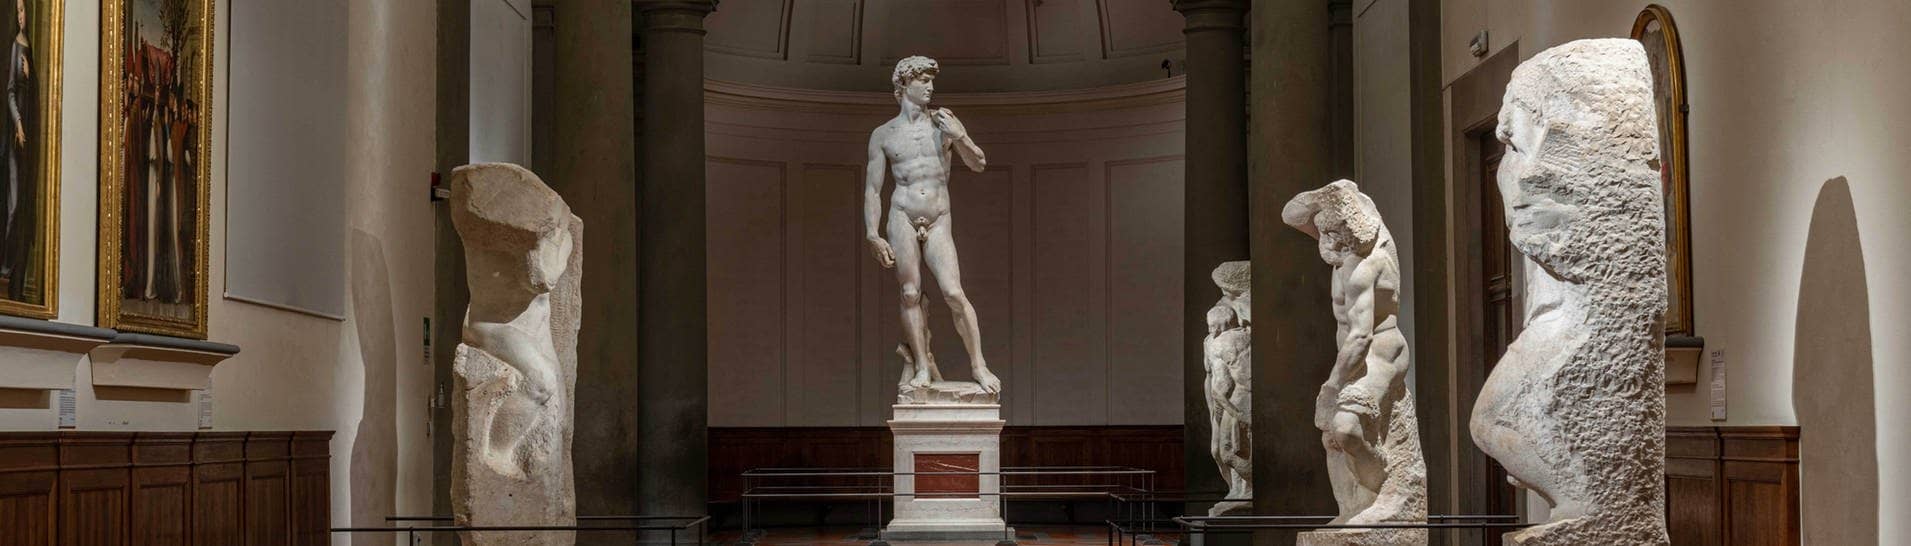 Die David-Statue von Michelangelo (Foto: dpa Bildfunk, picture alliance/dpa/Galleria dell’Accademia | Guido Cozzi)